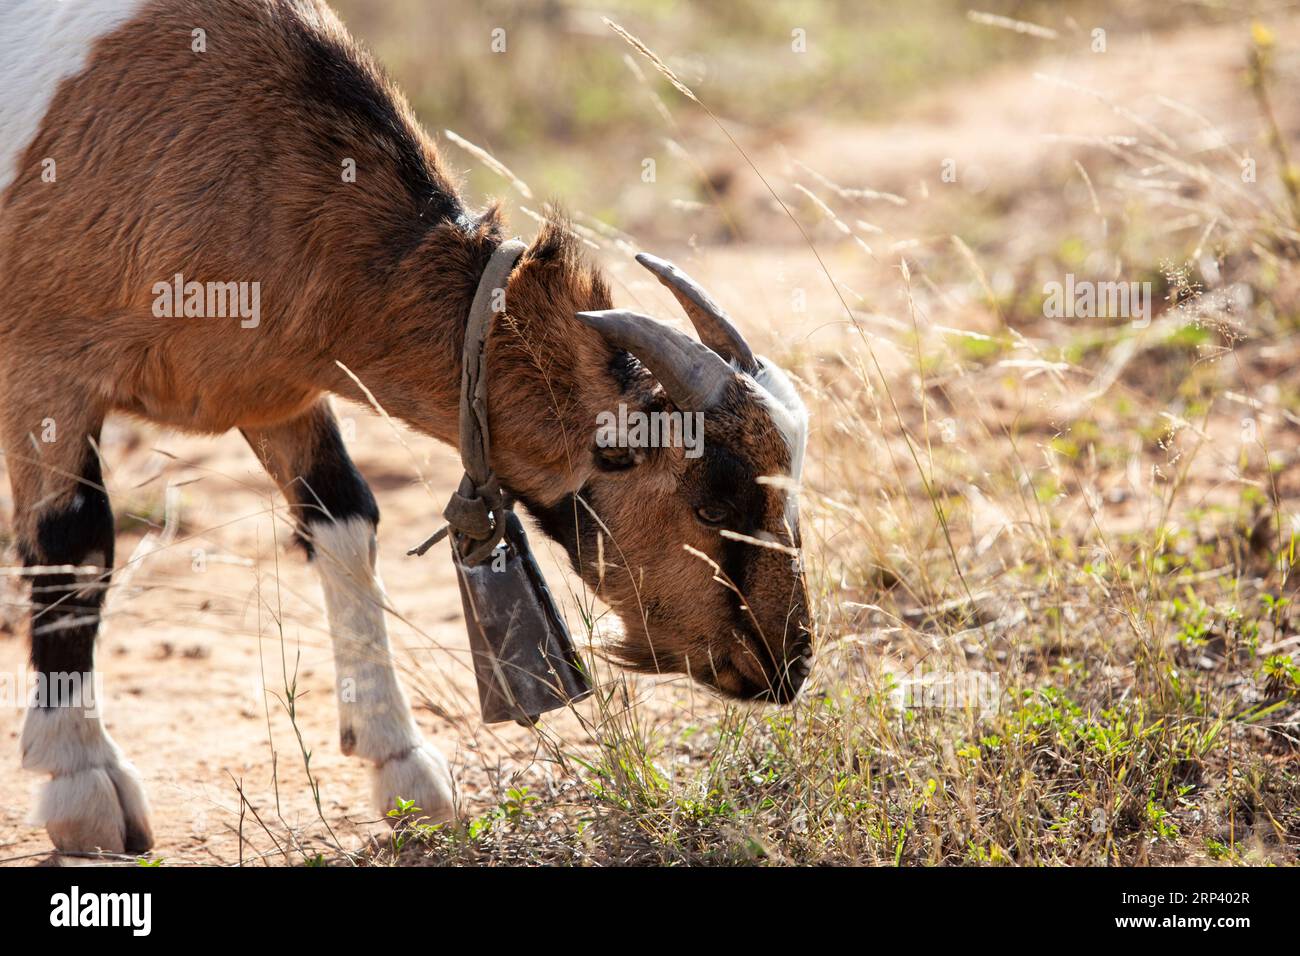 Ziege trägt eine Kuhglocke, damit der Hirte sie bei nomadischen Bewegungen aufspüren kann Stockfoto